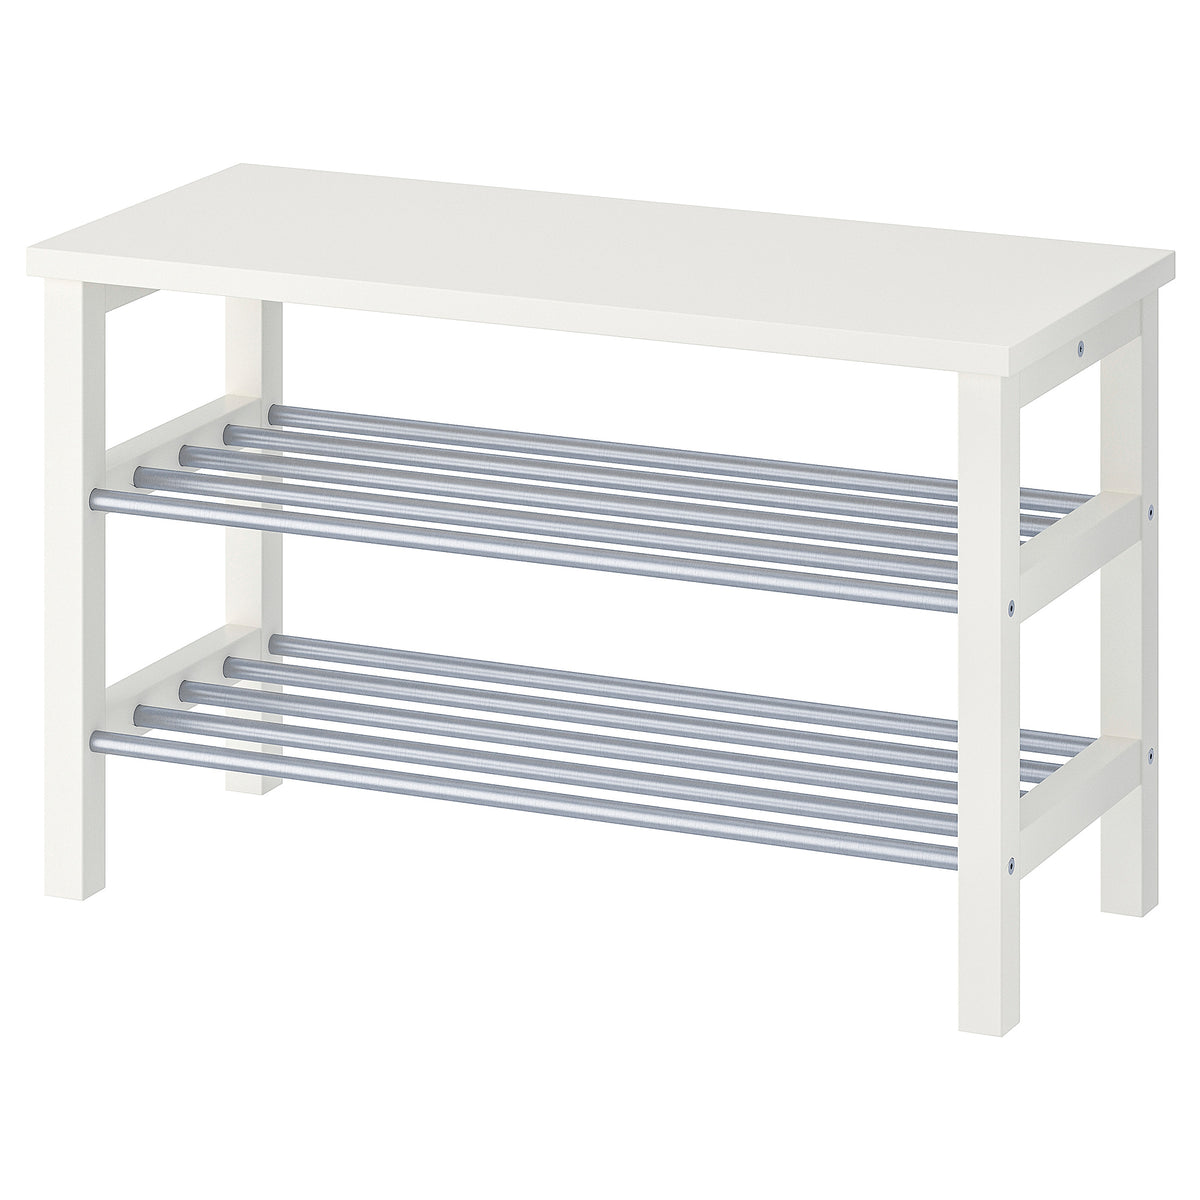 IKEA TJUSIG Bench with shoe storage, white, 81x34x50 cm